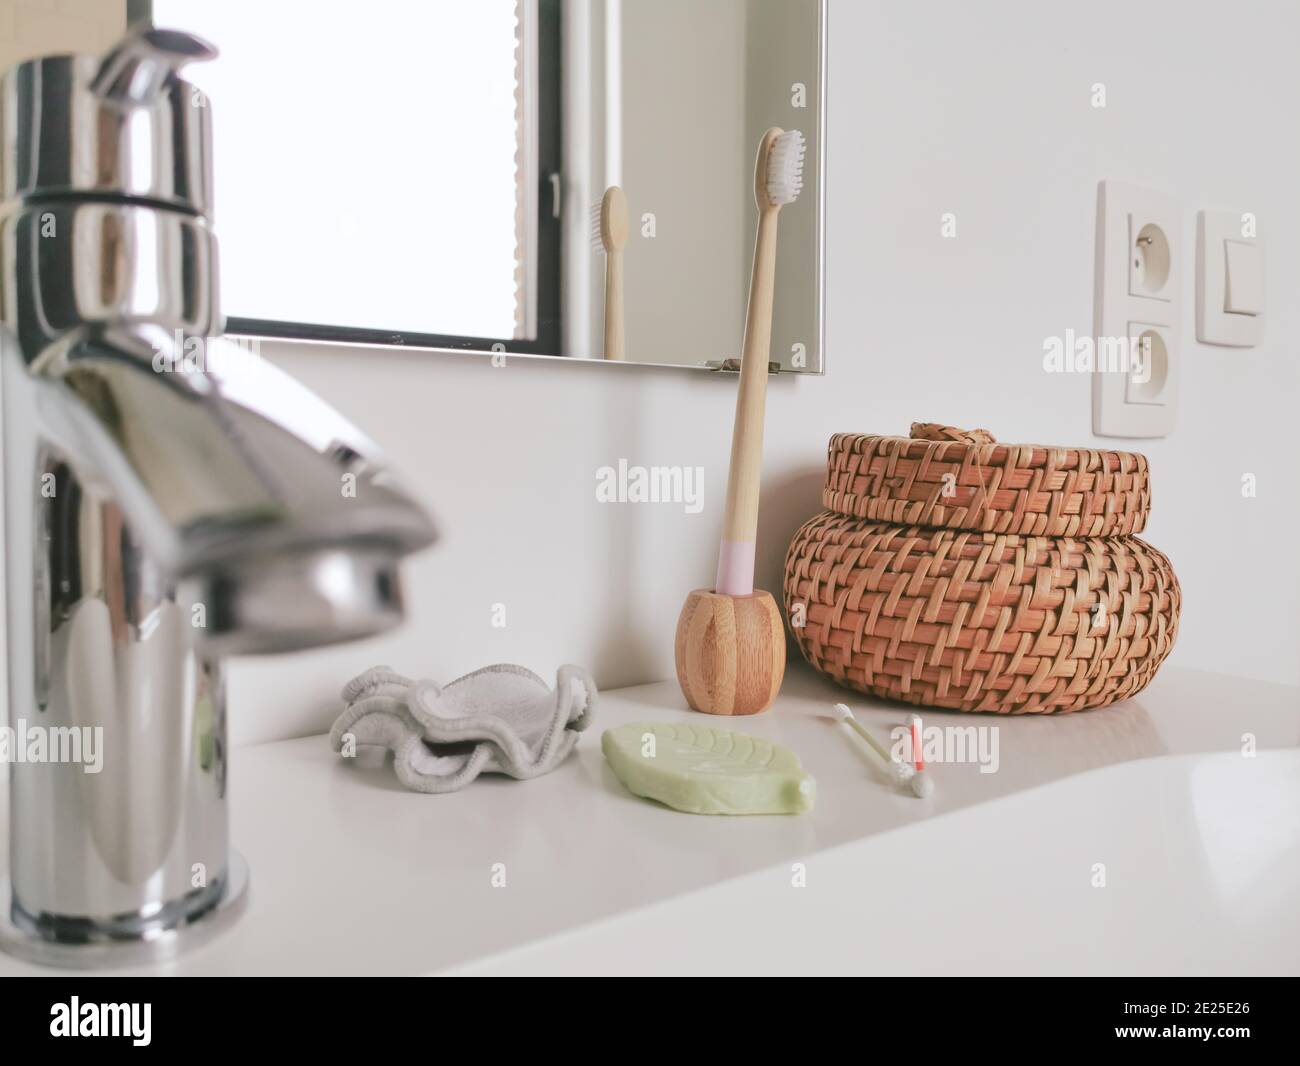 Concept de salle de bain zéro déchet avec des produits sans plastique et réutilisables tels que des cotons-tiges en silicone et une brosse à dents en bambou. Style de vie durable. Banque D'Images